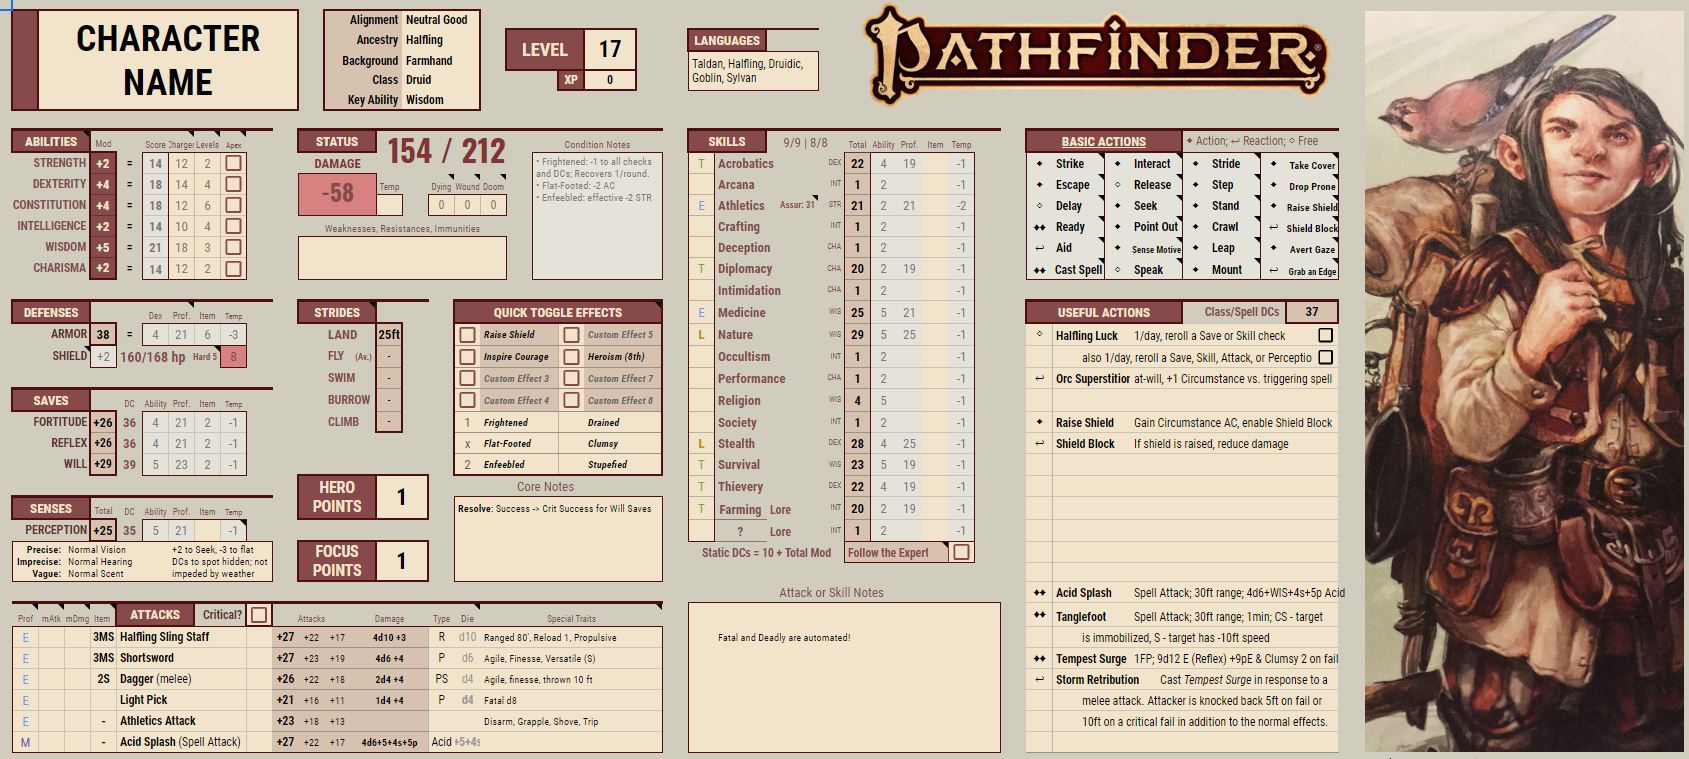 Ficha Completável Pathfinder 2e - Pesquisa Google, PDF, Jogos de RPG